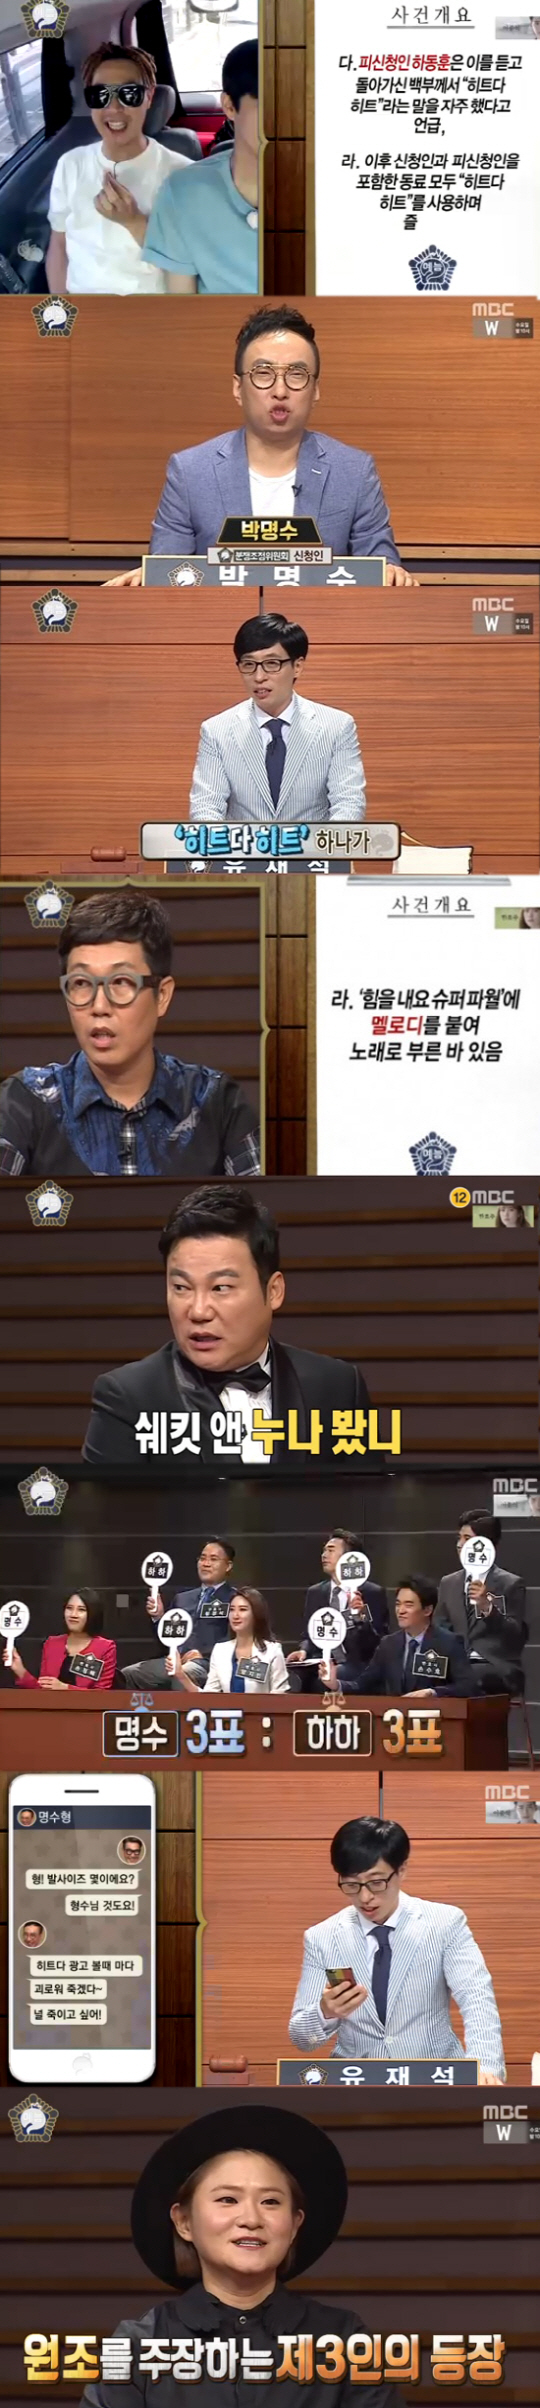 '무한도전' 박명수VS하하VS 김신영, 치열한 '히트다 히트' 분쟁 (종…